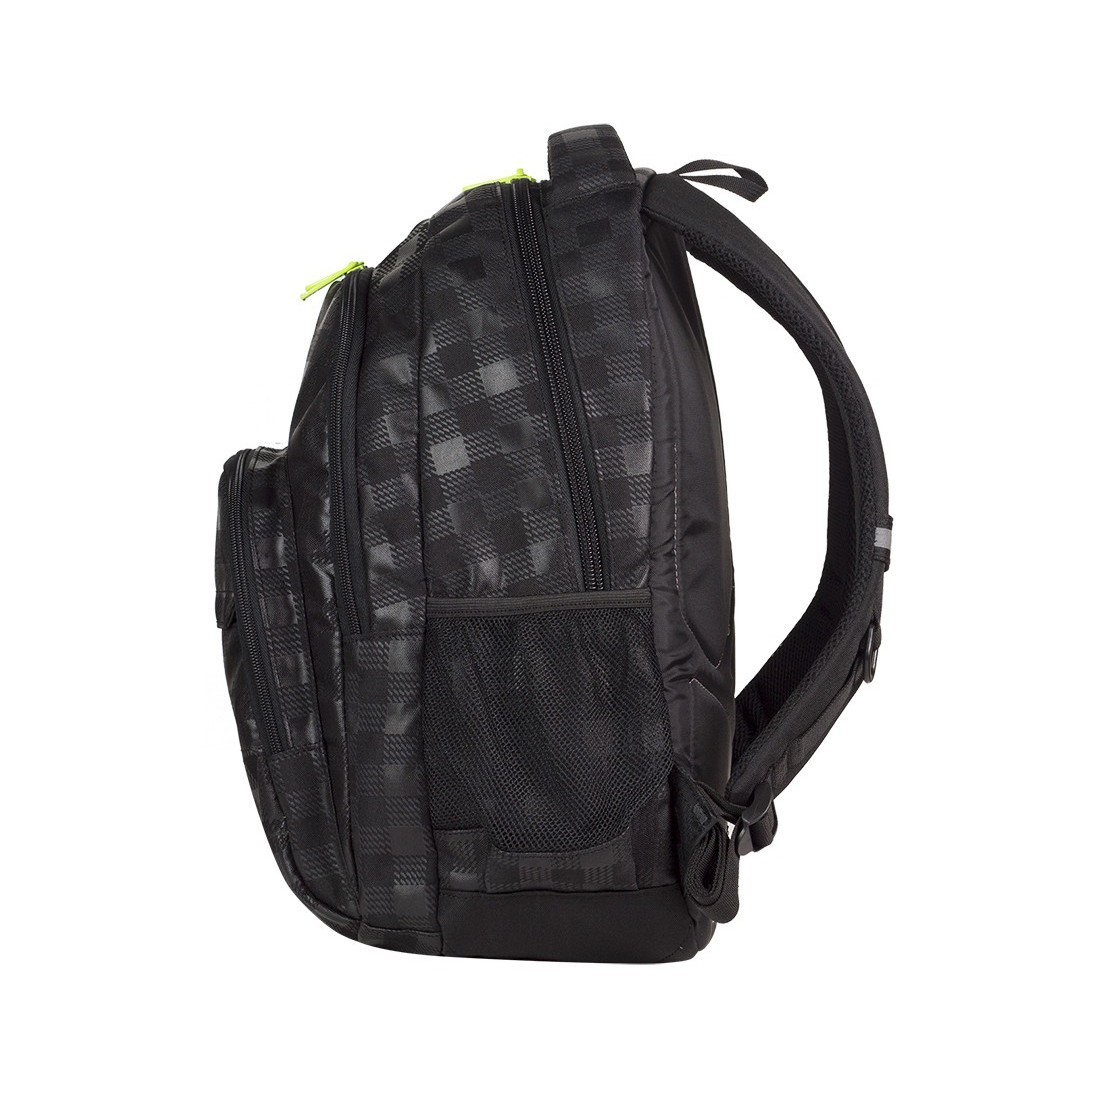 Plecak młodzieżowy Coolpack CP lekki czarny w kratkę + żółte wstawki BASIC BLACK & YELLOW 414 - plecak-tornister.pl